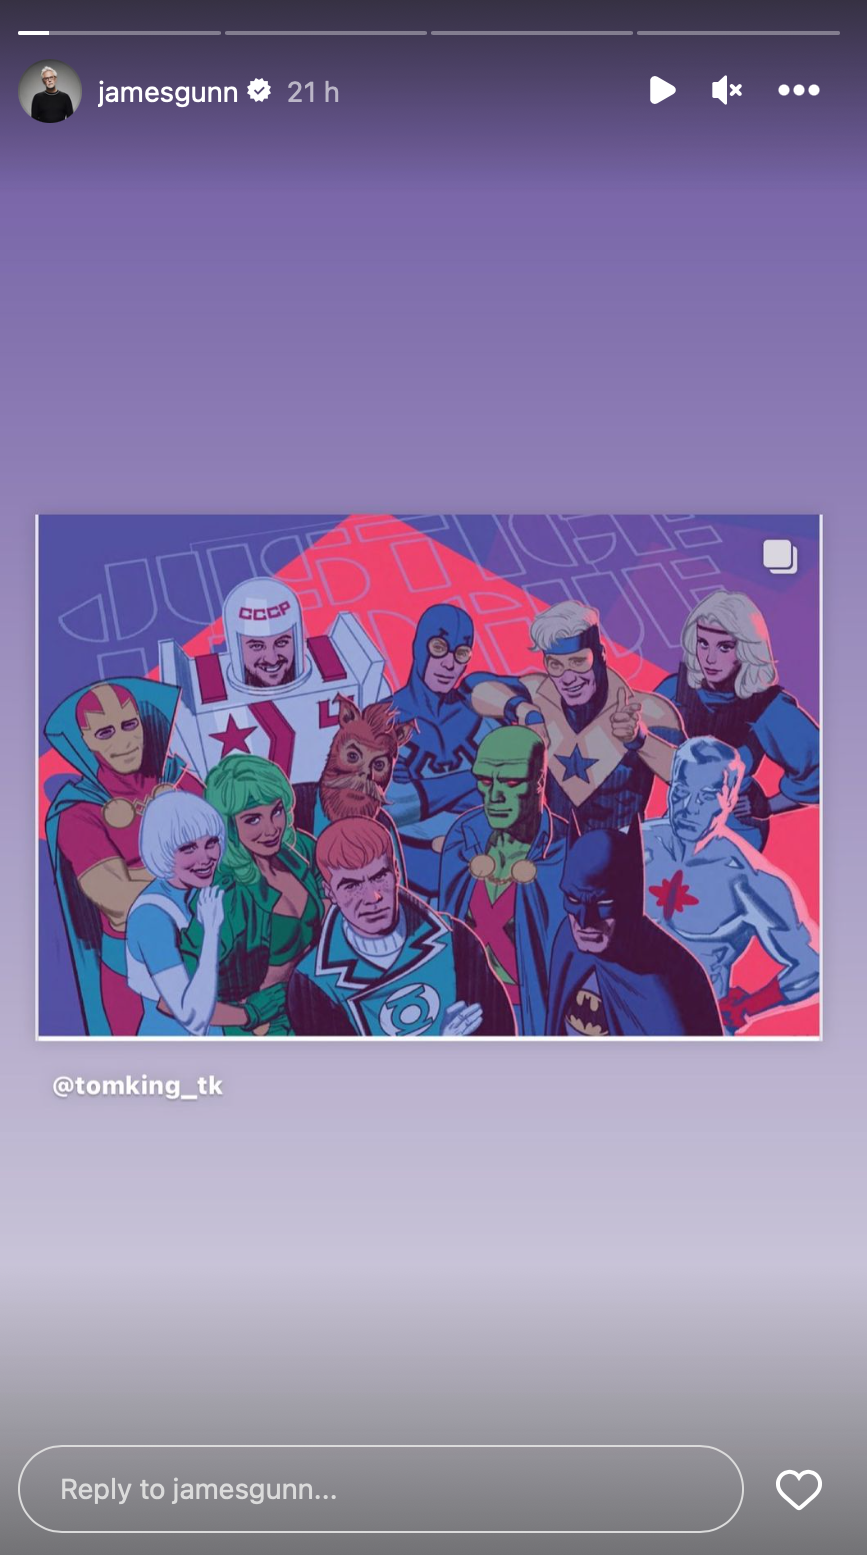 James Gunn, Instagram'da Justice League International'ın bir görüntüsünü paylaşıyor